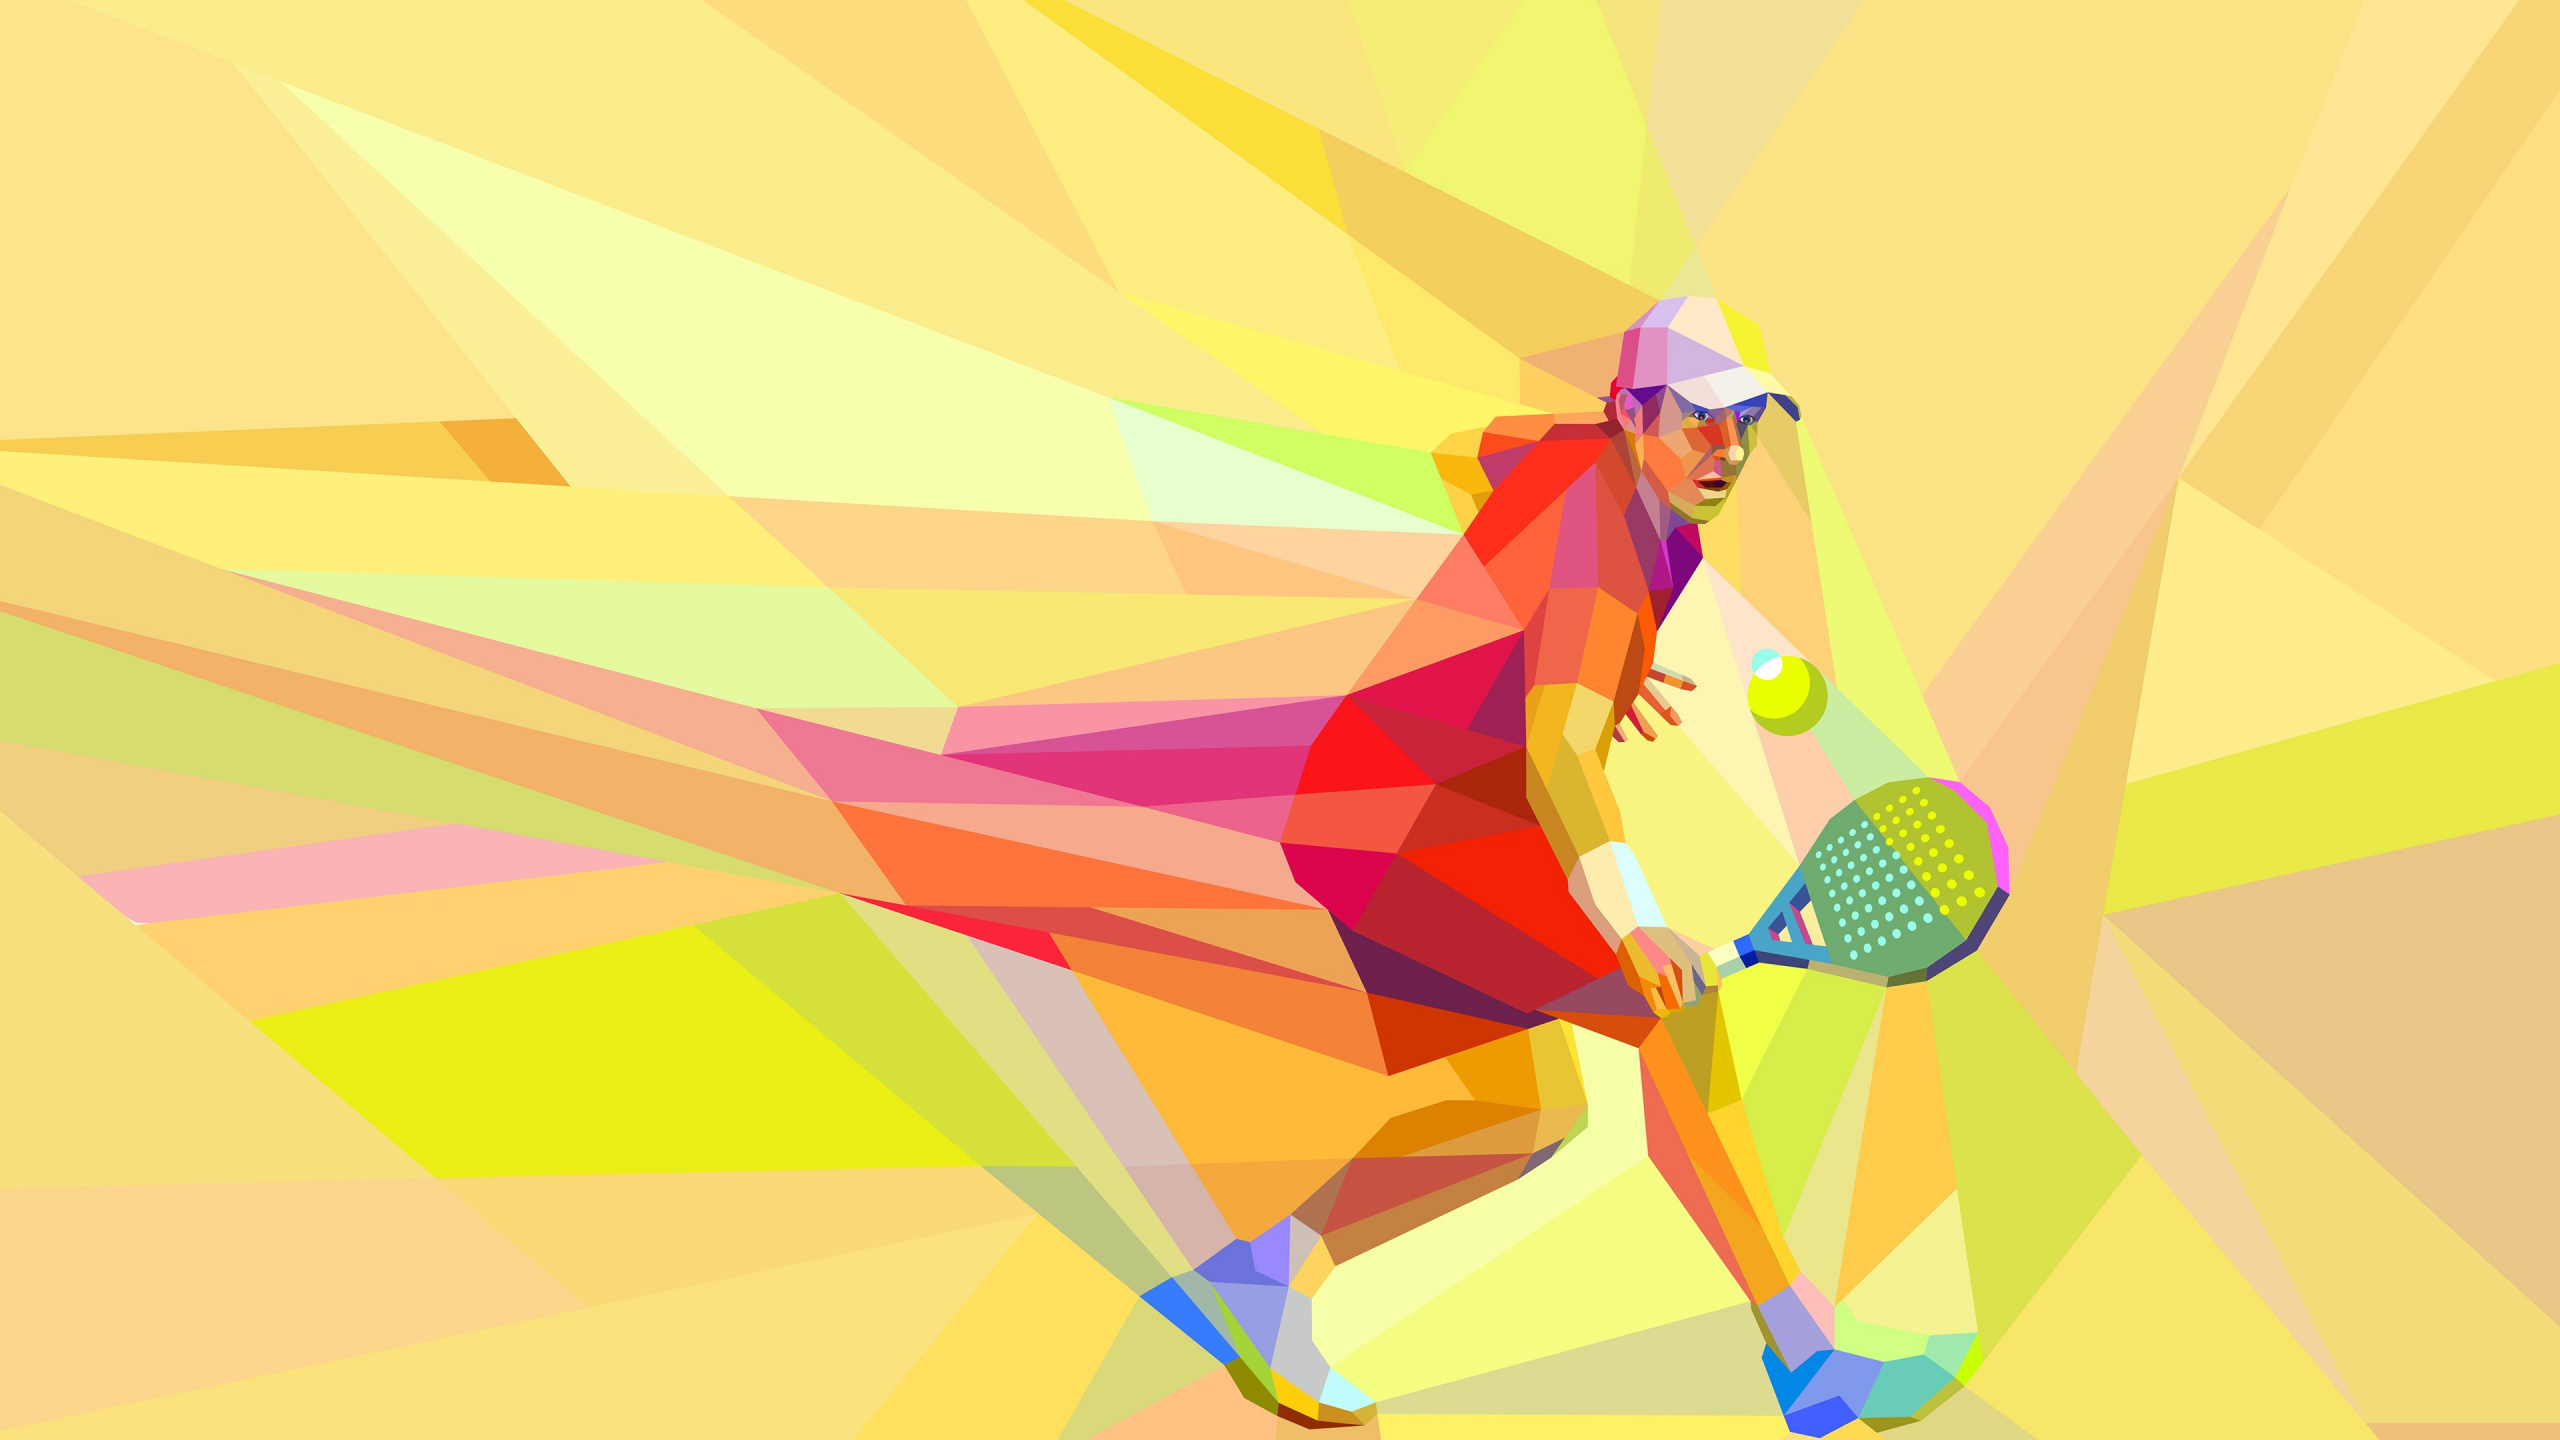 网球, 黄色的, 艺术, 图形设计, 乐趣 壁纸 2560x1440 允许